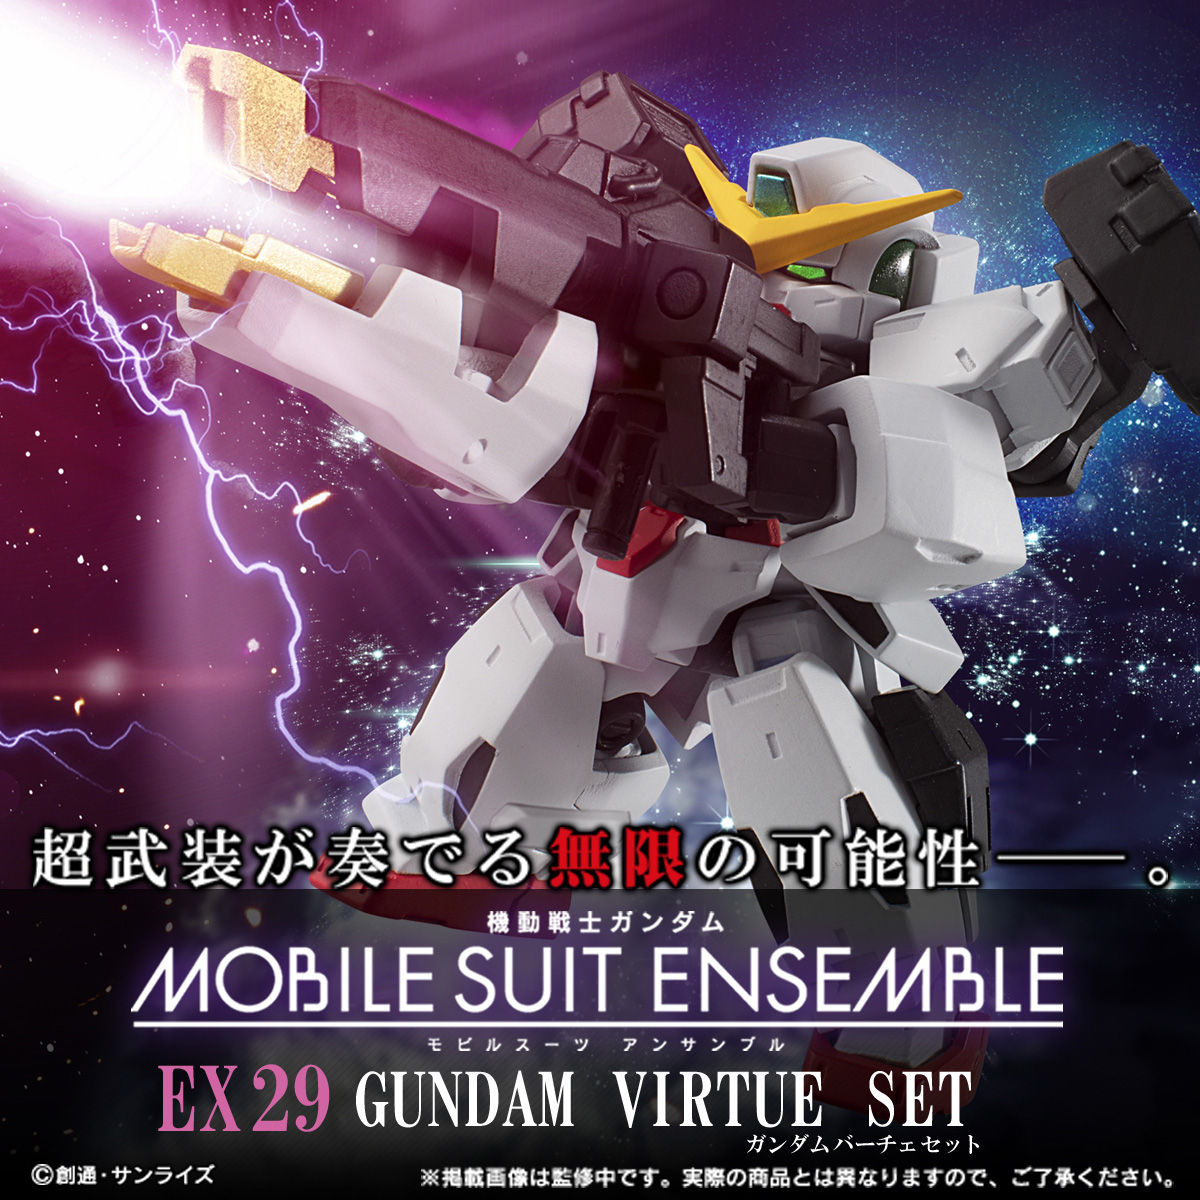 【限定販売】MOBILE SUIT ENSEMBLE『EX29 ガンダムヴァーチェ セット』デフォルメ可動フィギュア-001